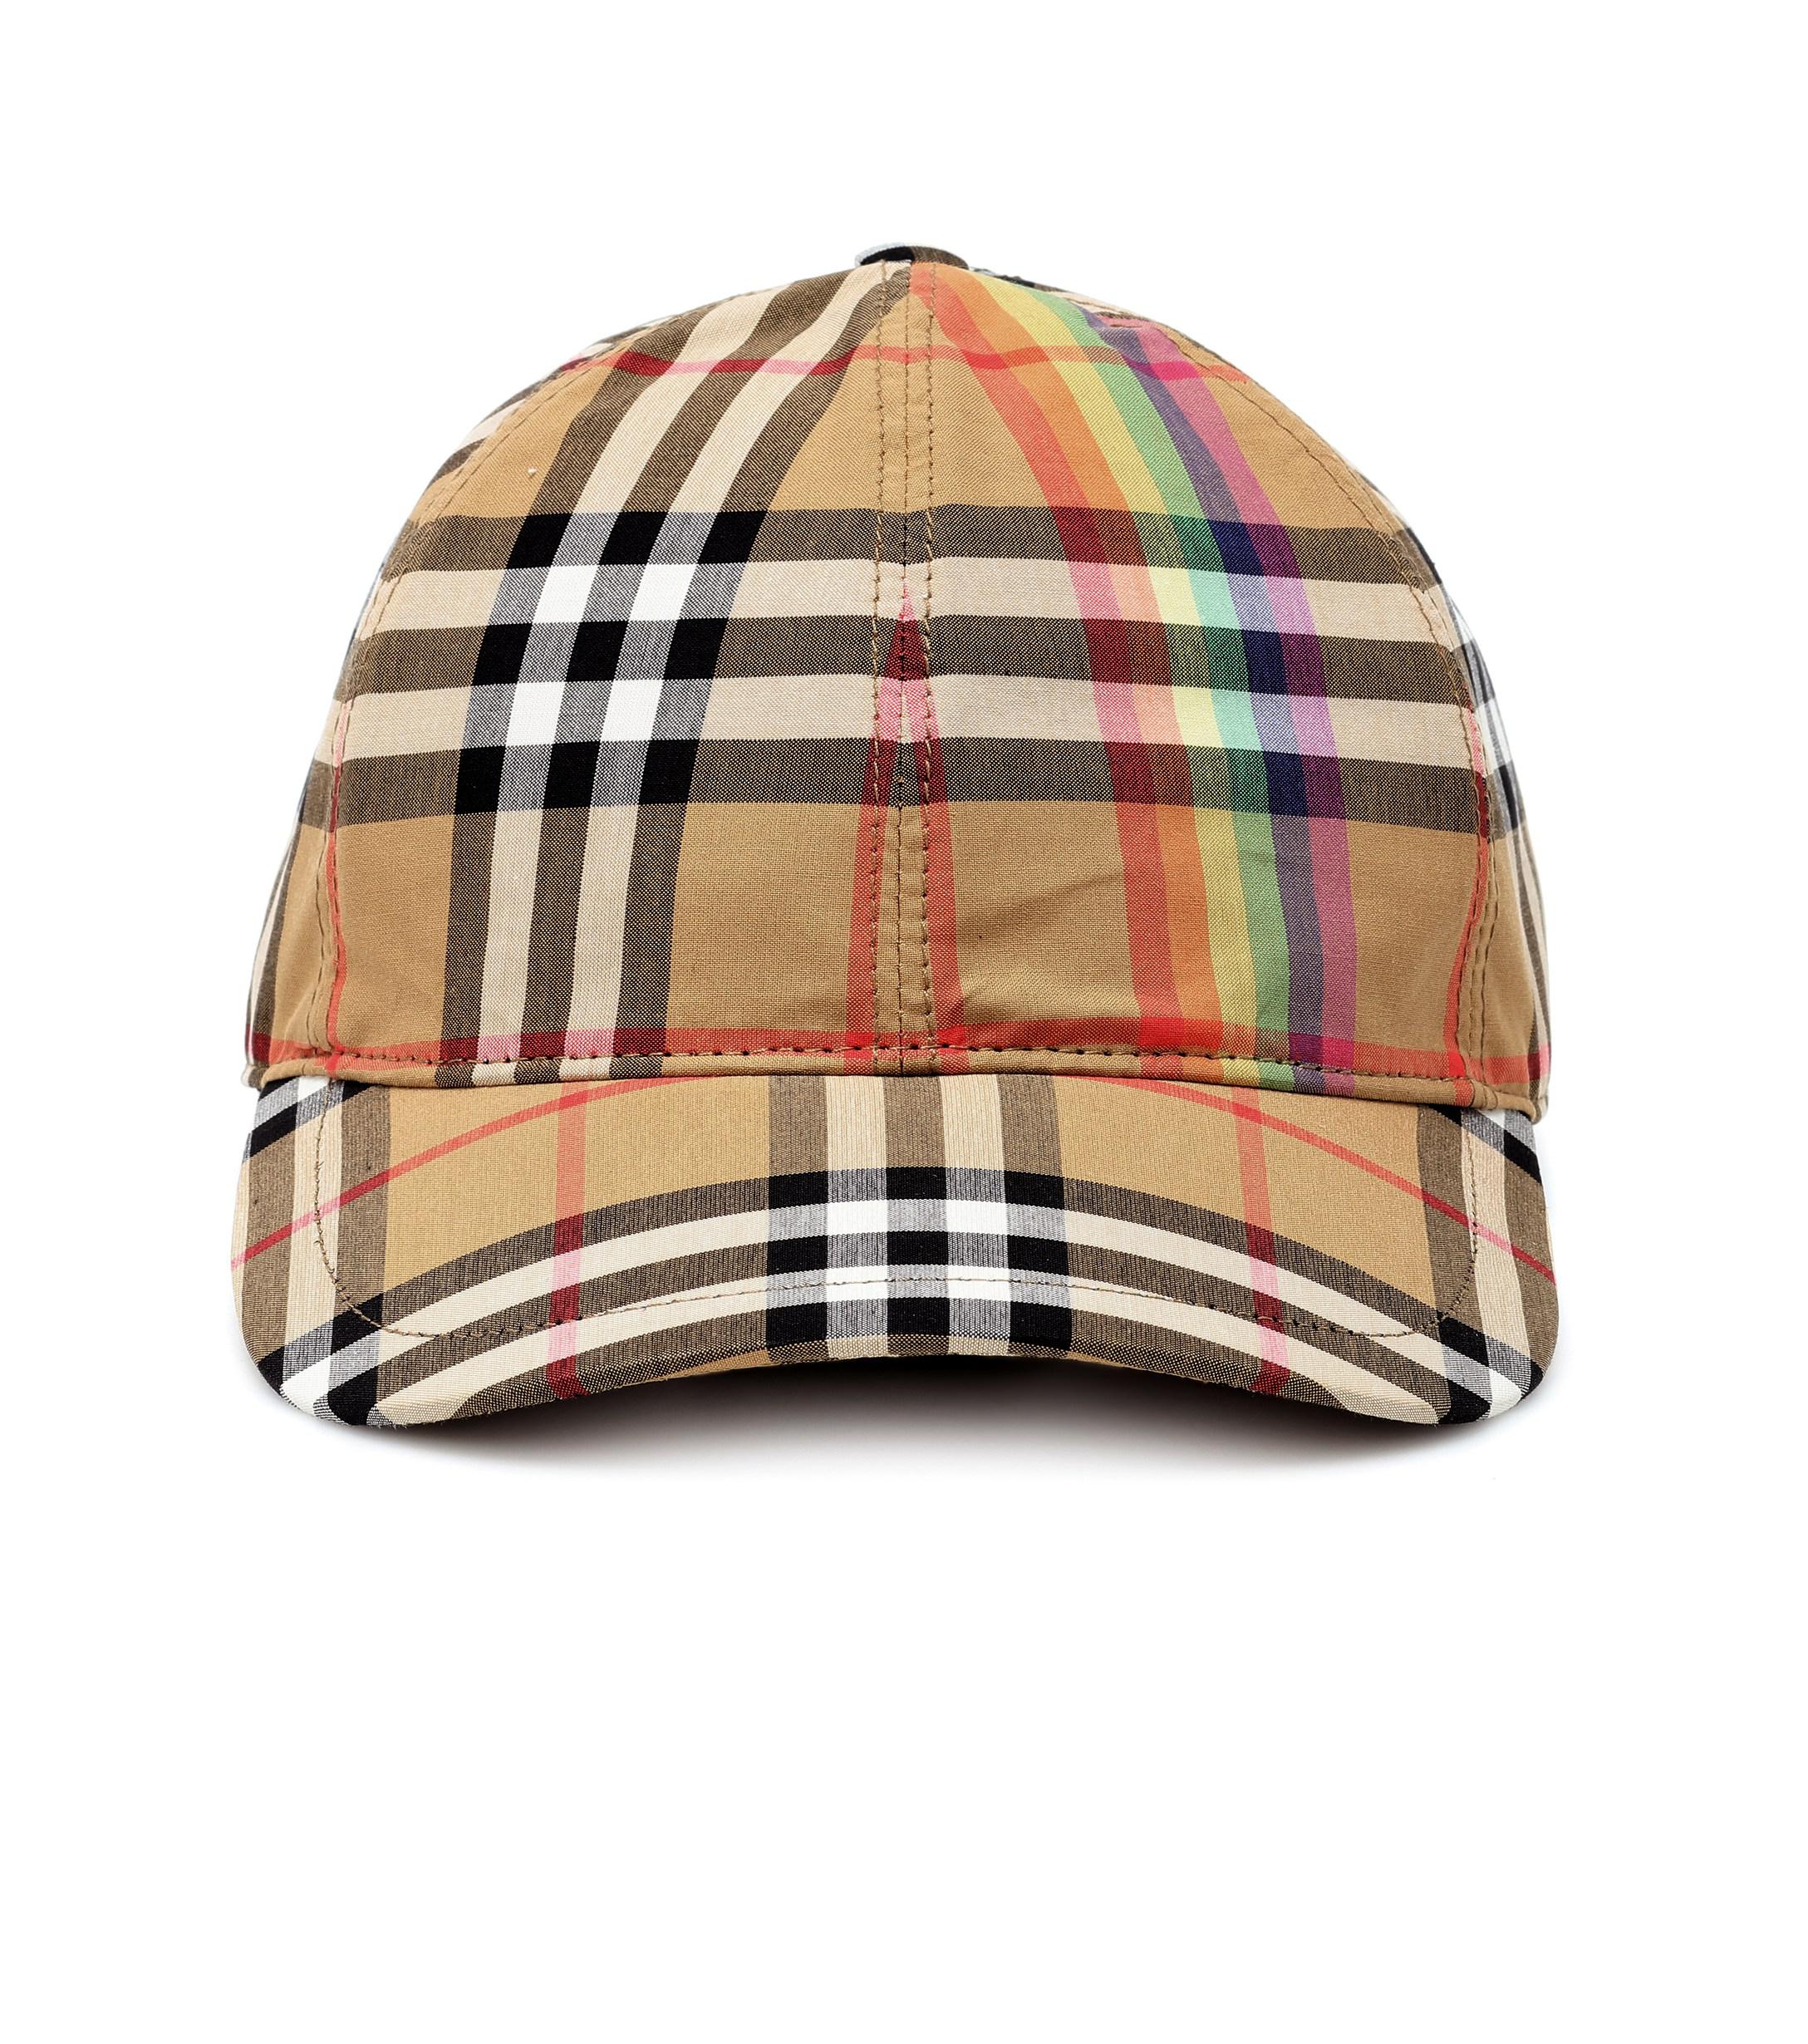 burberry hat rainbow